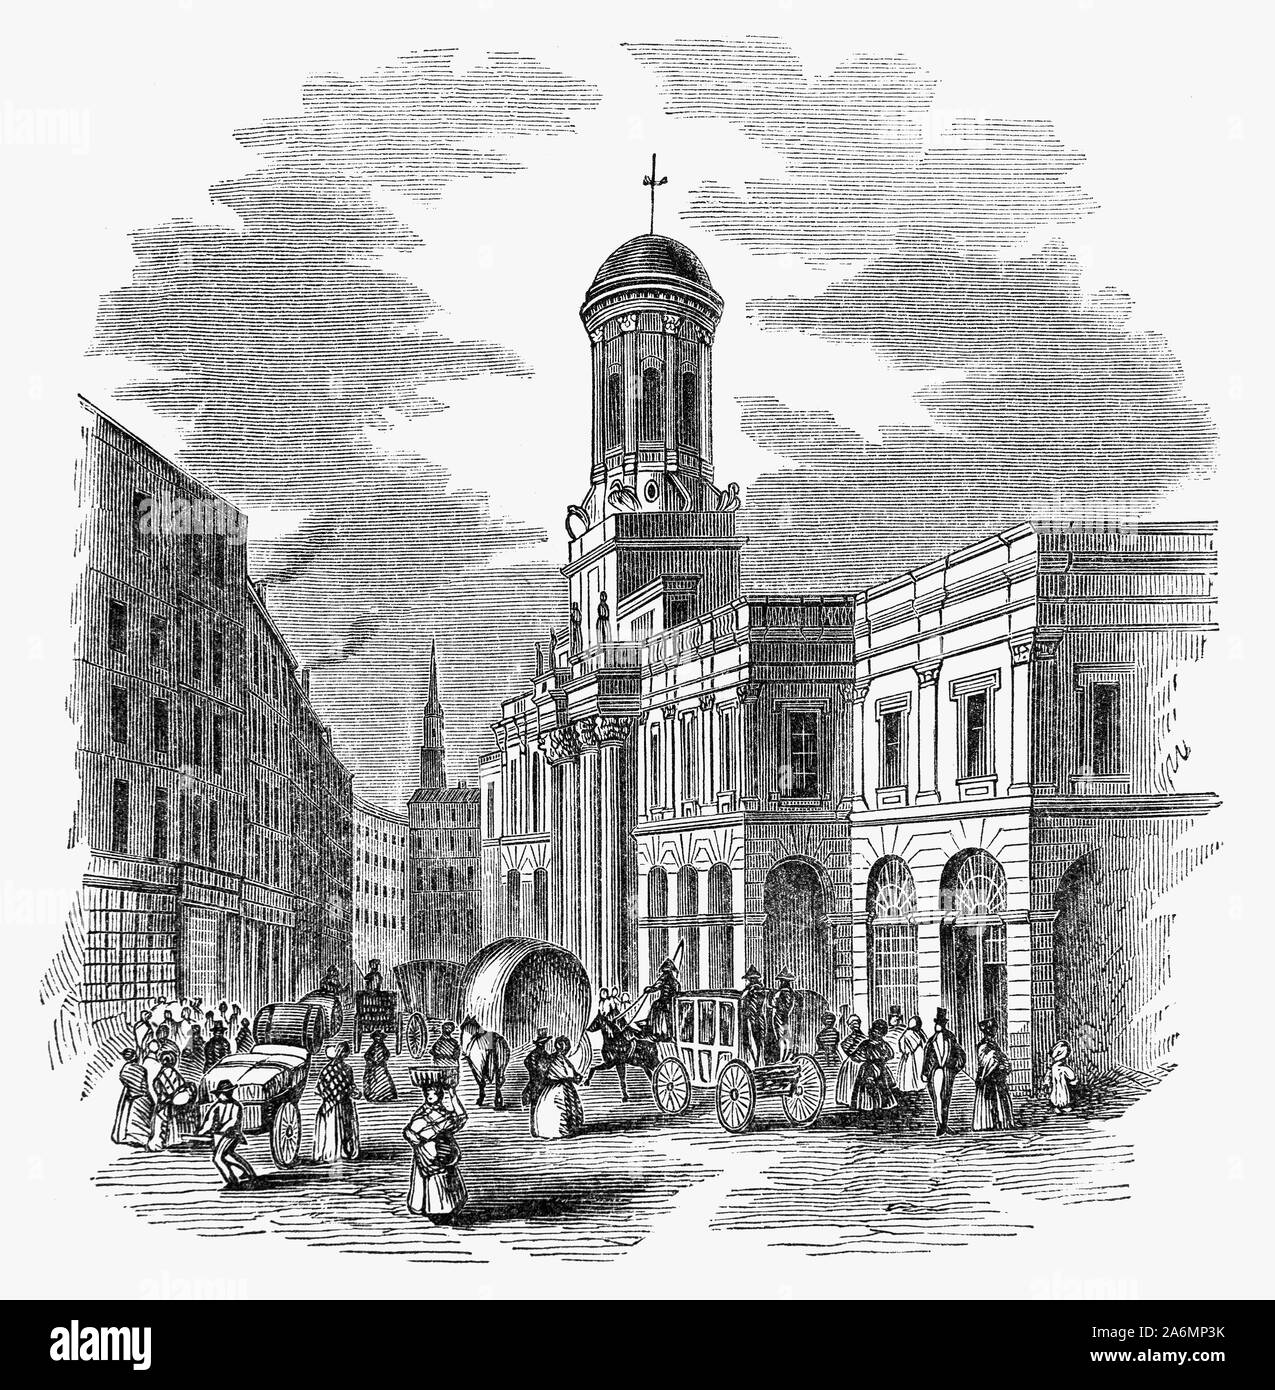 La Royal Exchange en Londres fue fundada en el siglo XVI por el comerciante Sir Thomas Gresham en la sugerencia de su factor Richard Clough para actuar como un centro de comercio de la ciudad de Londres. Gresham edificio original fue destruida en el Gran Incendio de Londres en 1666. El segundo edificio, construido en el sitio flanqueado por Cornhill y la calle Threadneedle fue diseñado por Edward Jarman y abrió sus puertas en 1669, sino que también quemaron el 10 de enero de 1838. Había sido utilizada por el mercado de seguros Lloyd's, que se vio obligado a trasladar temporalmente al sur de mar casa tras el incendio de 1838. Foto de stock